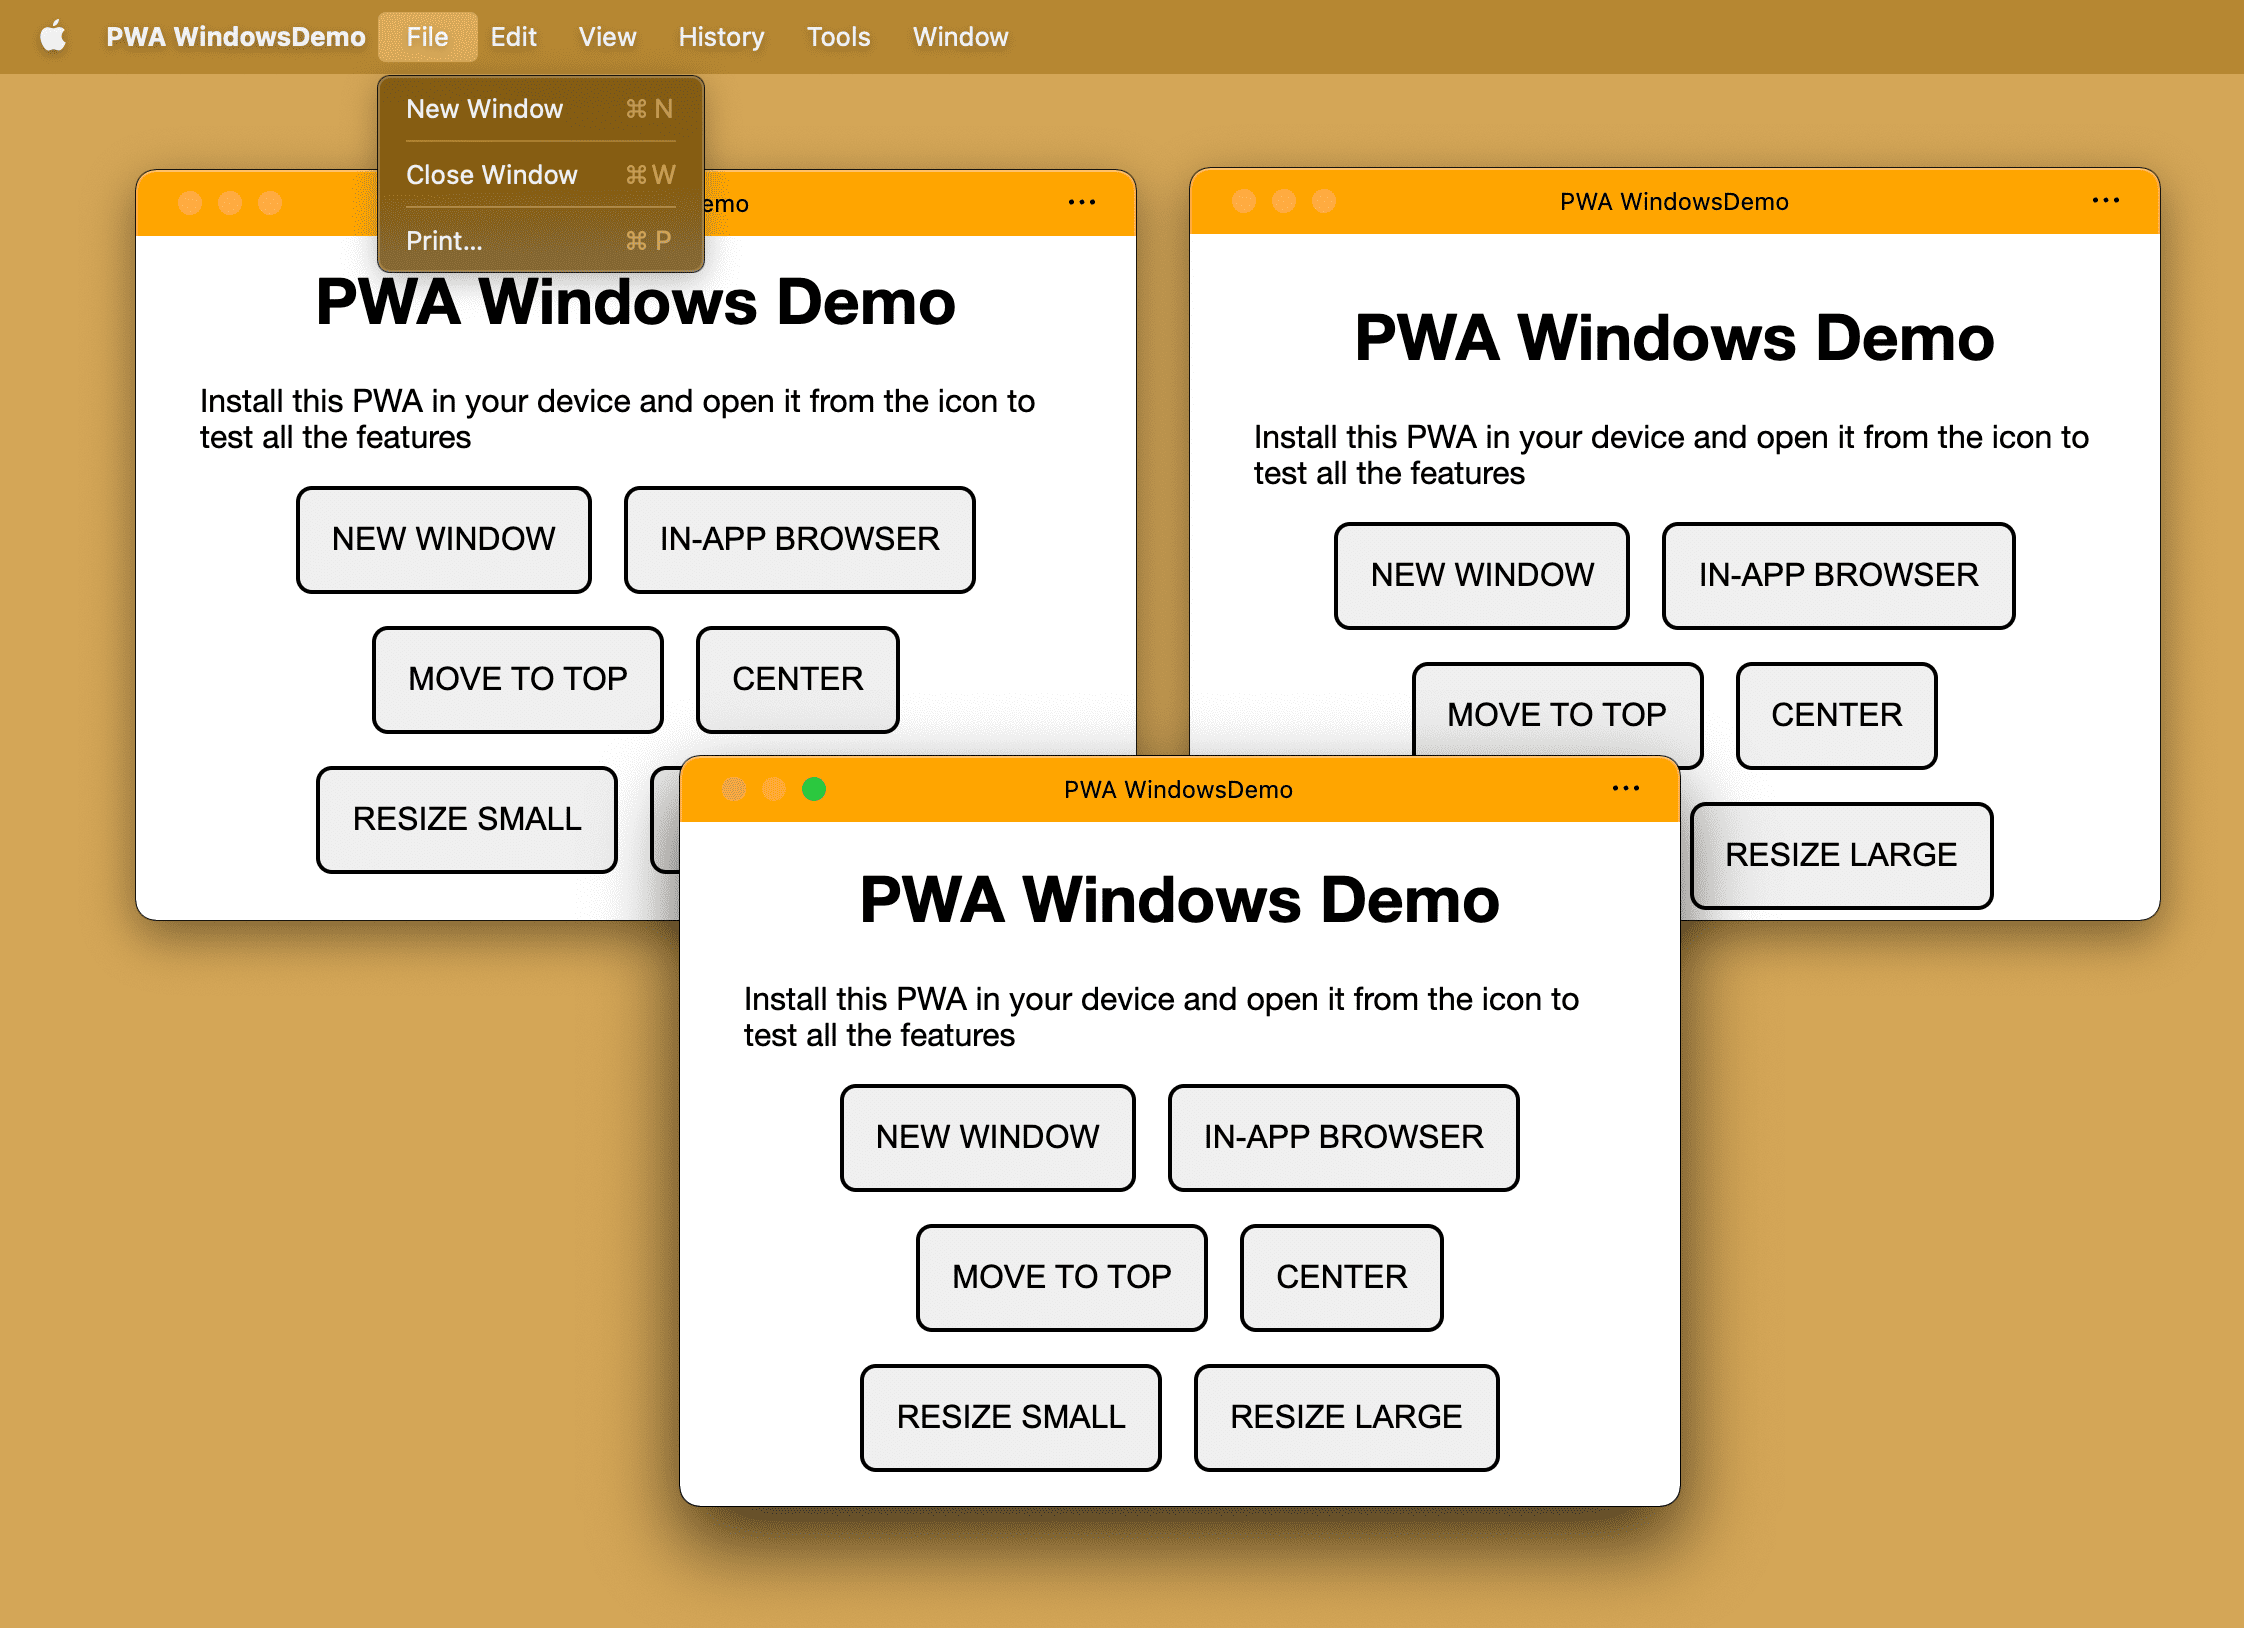 Ta sama zainstalowana aplikacja PWA z kilkoma oknami otwartych w systemie operacyjnym na komputerze.